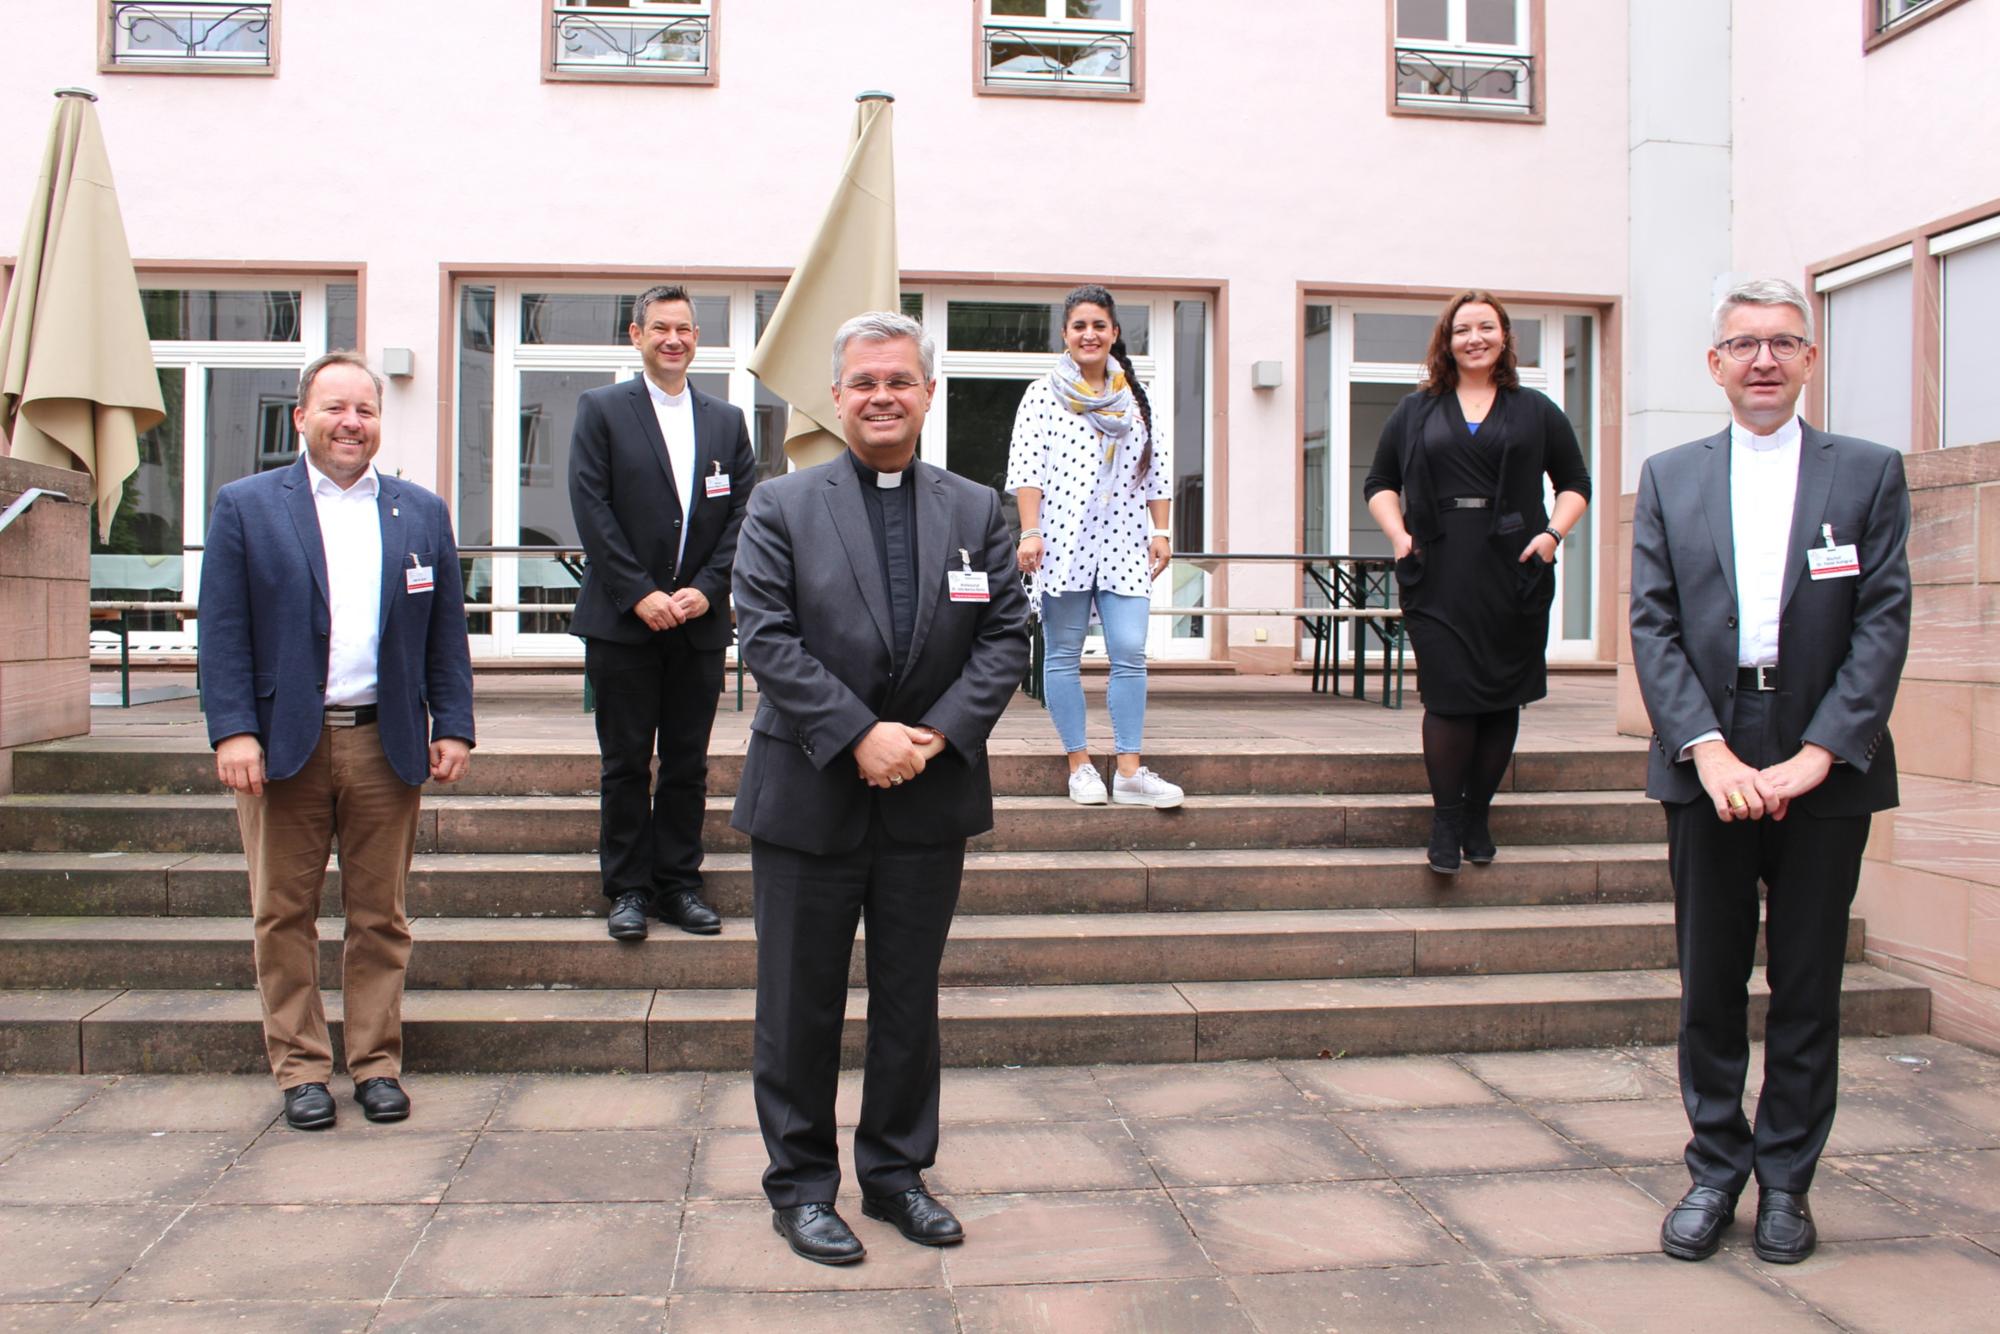 Im September 2020 war für die Mainzer Delegierten noch eine Regionenkonferenz auf Abstand möglich. Im Februar ist nun eine Online-Konferenz im Rahmen des Synodalen Weges geplant. (c) Bistum Mainz / Blum